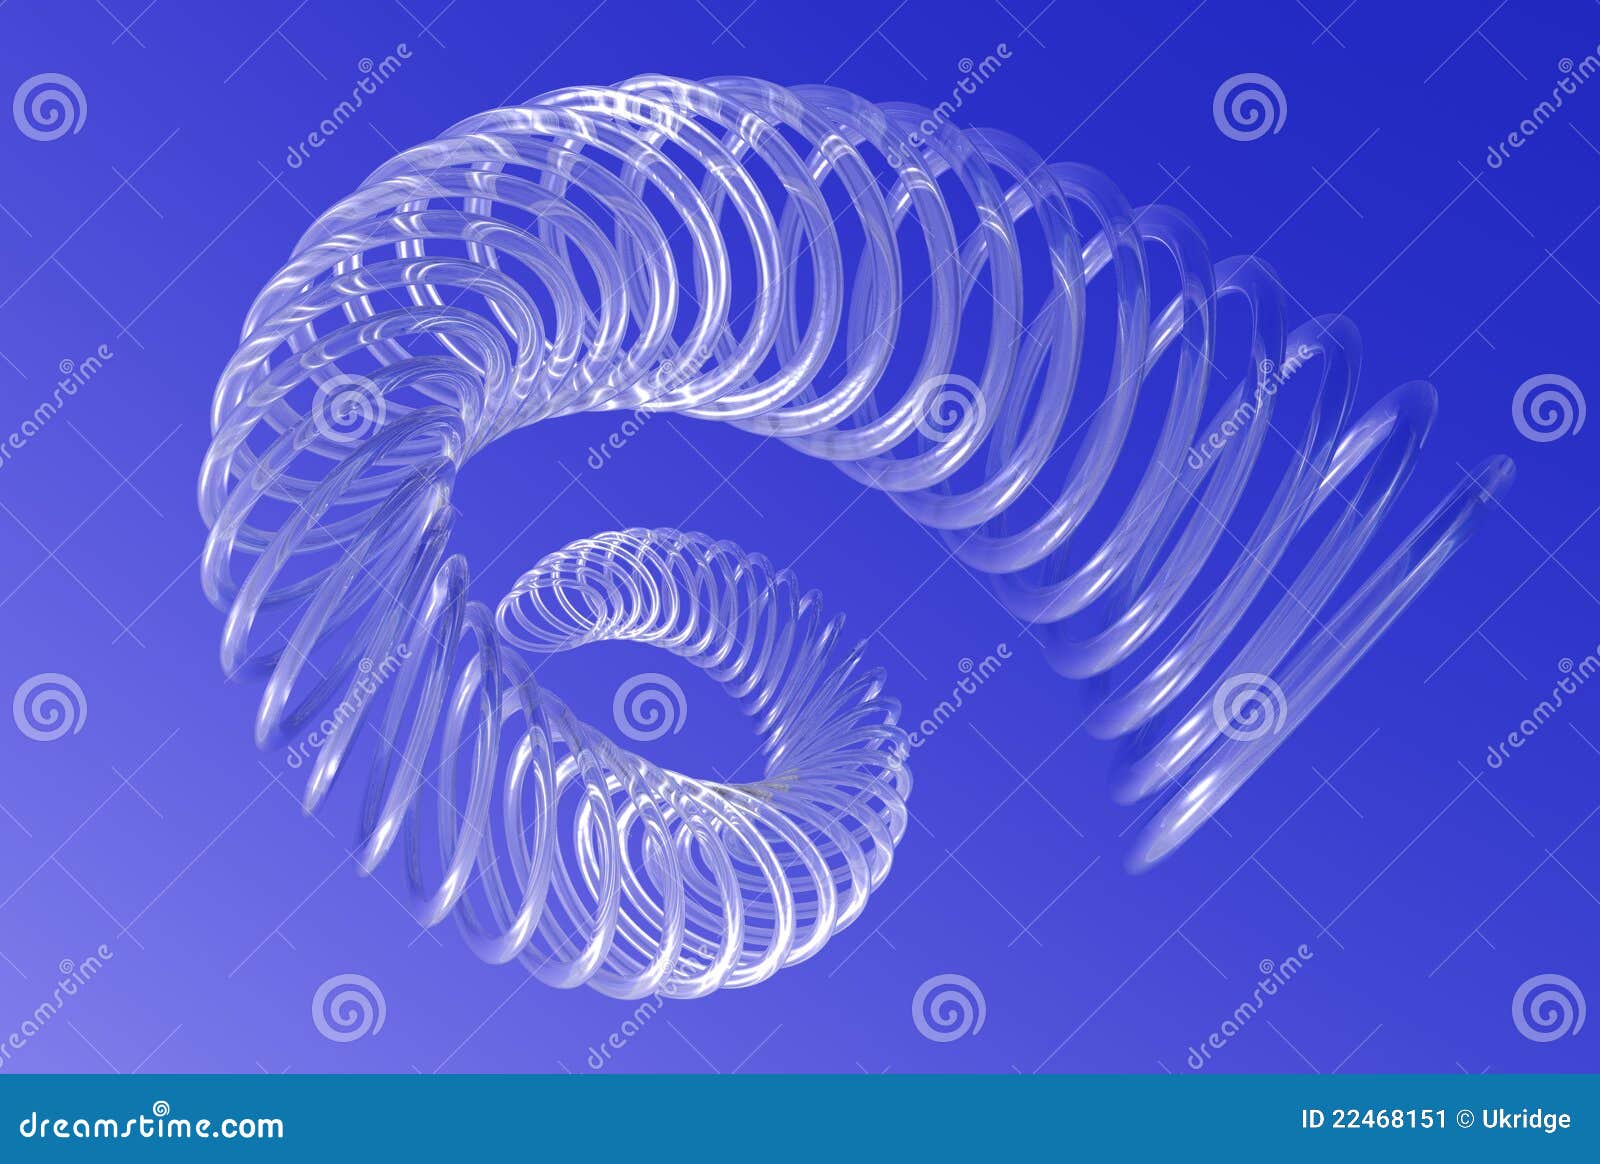 spiralling vortex in blue sky